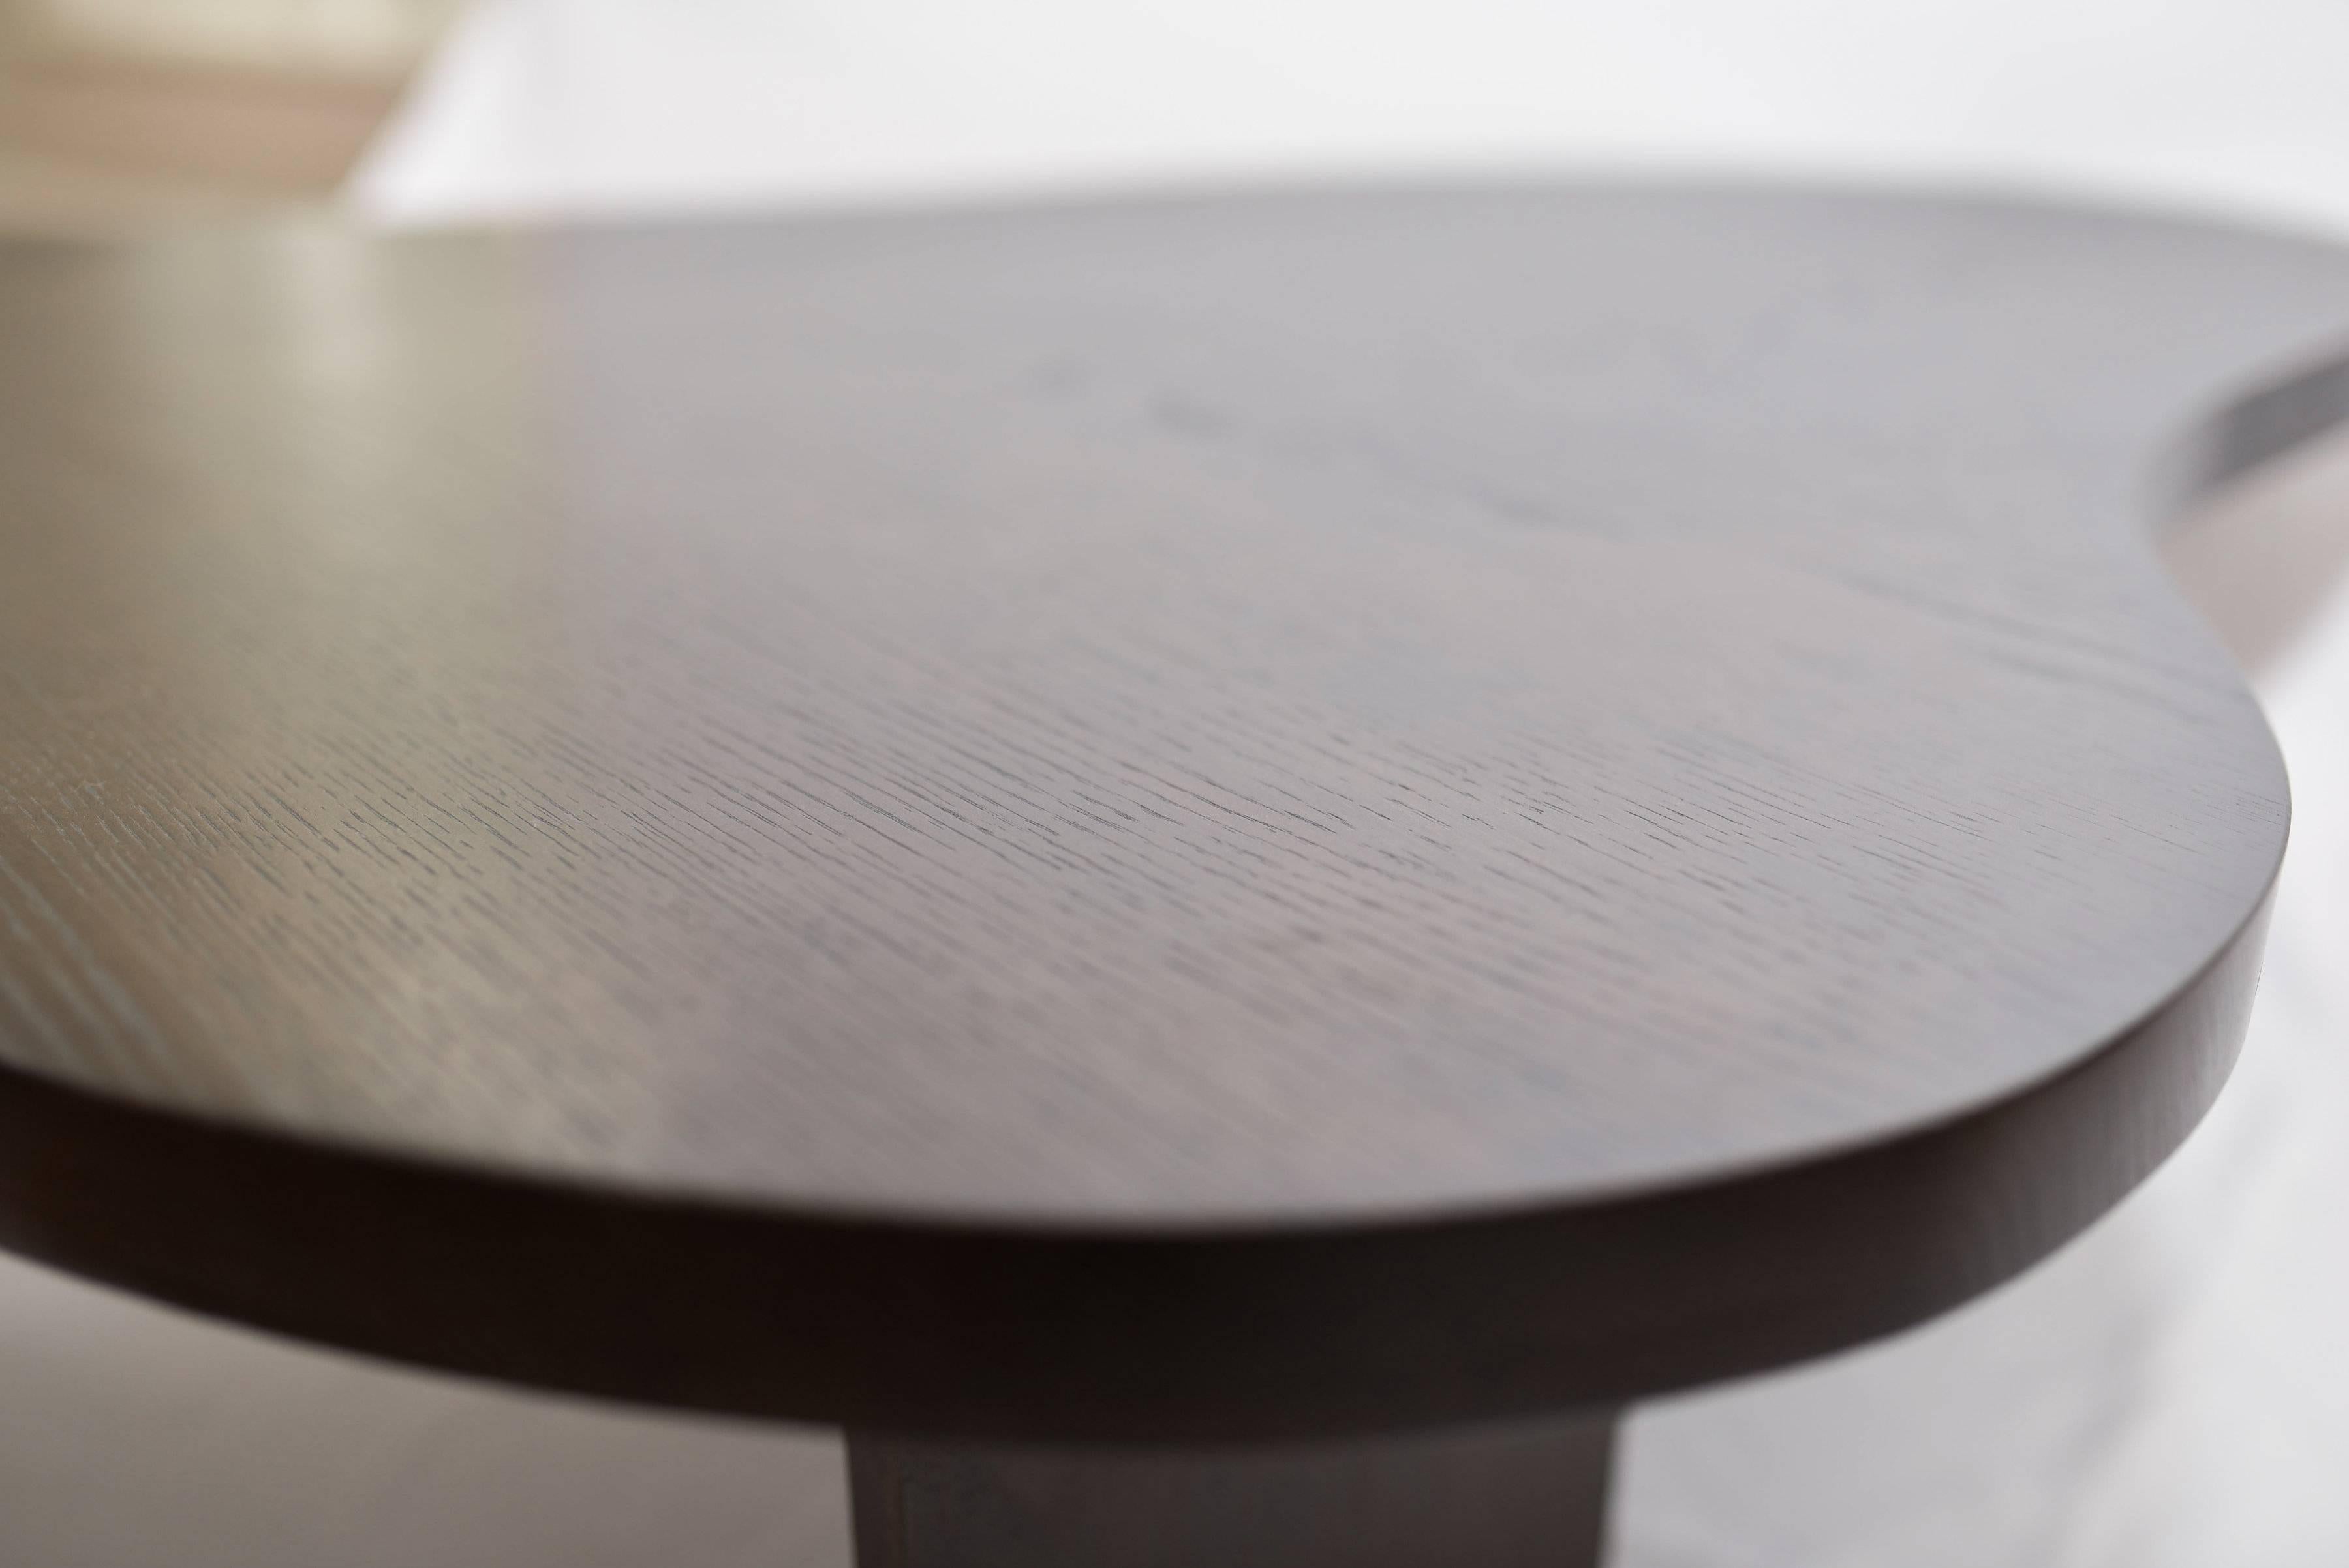 
Fabriquée à la main en frêne massif assemblé, notre table à cocktail Colin est curviligne, simple et élégante. Avec un clin d'œil au design du milieu du siècle, tout en étant classiquement mis à jour.

Une grande table basse moderne et incurvée